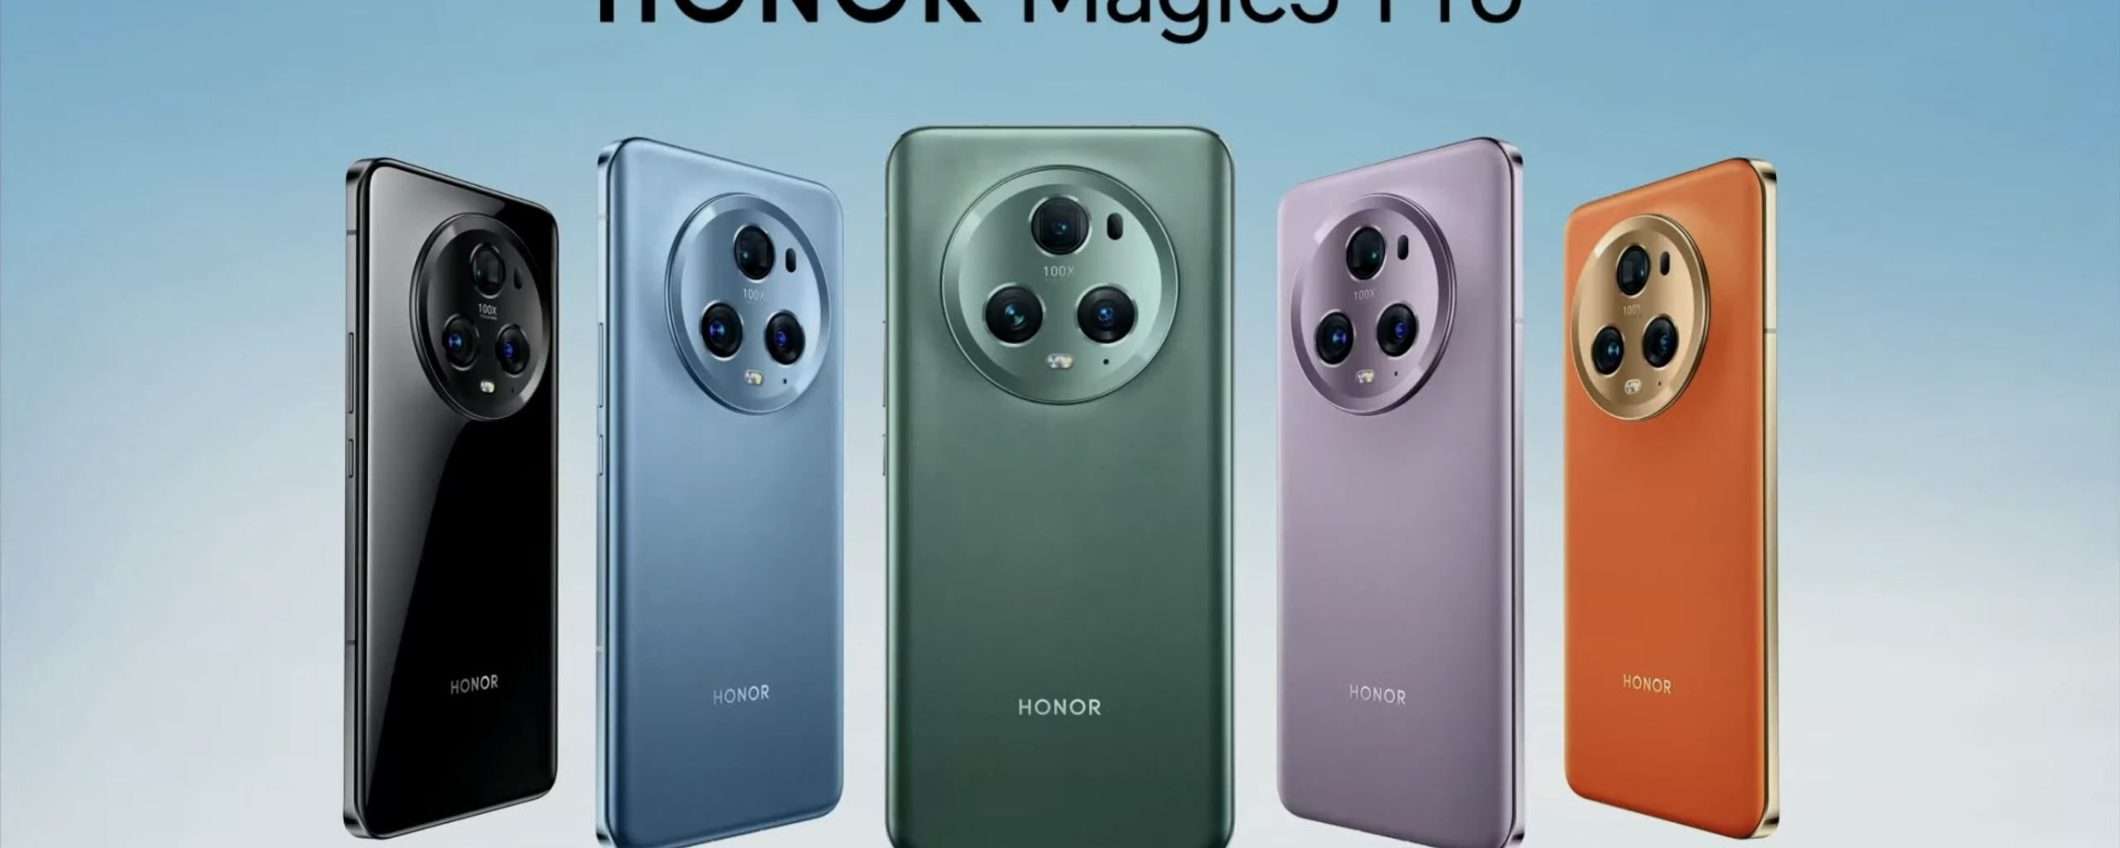 HONOR Magic5 Pro in offerta su Amazon con 300€ di sconto